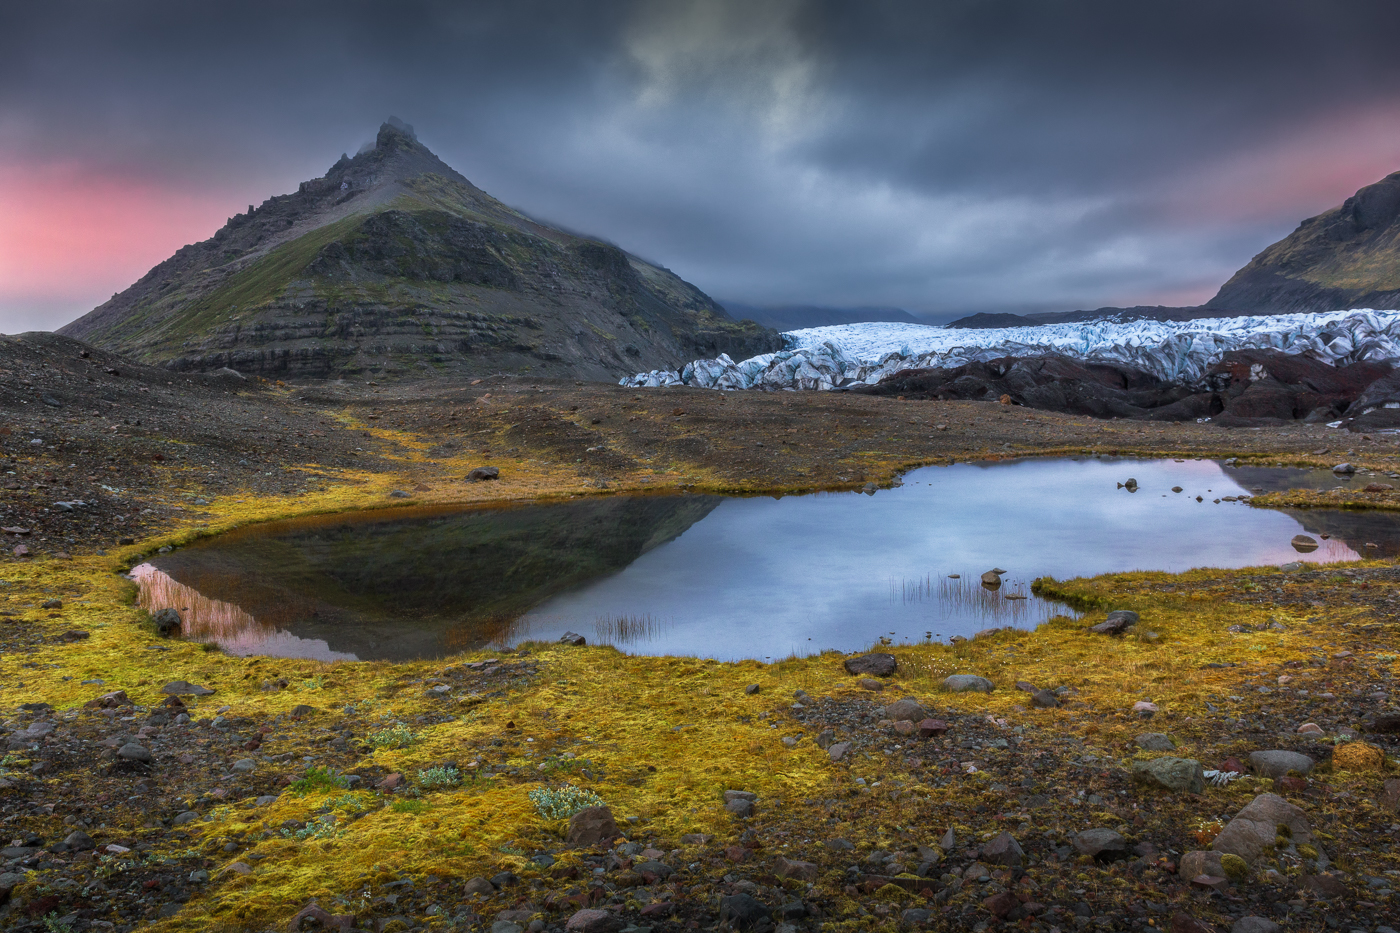 Dinanzi al ghiacciaio Svínafellsjökull, Il lungo tramonto estivo islandese regala colori inattesi dopo una giornata trascorsa sotto una costante pioggia battente. Vatnajökull National Park, Islanda.